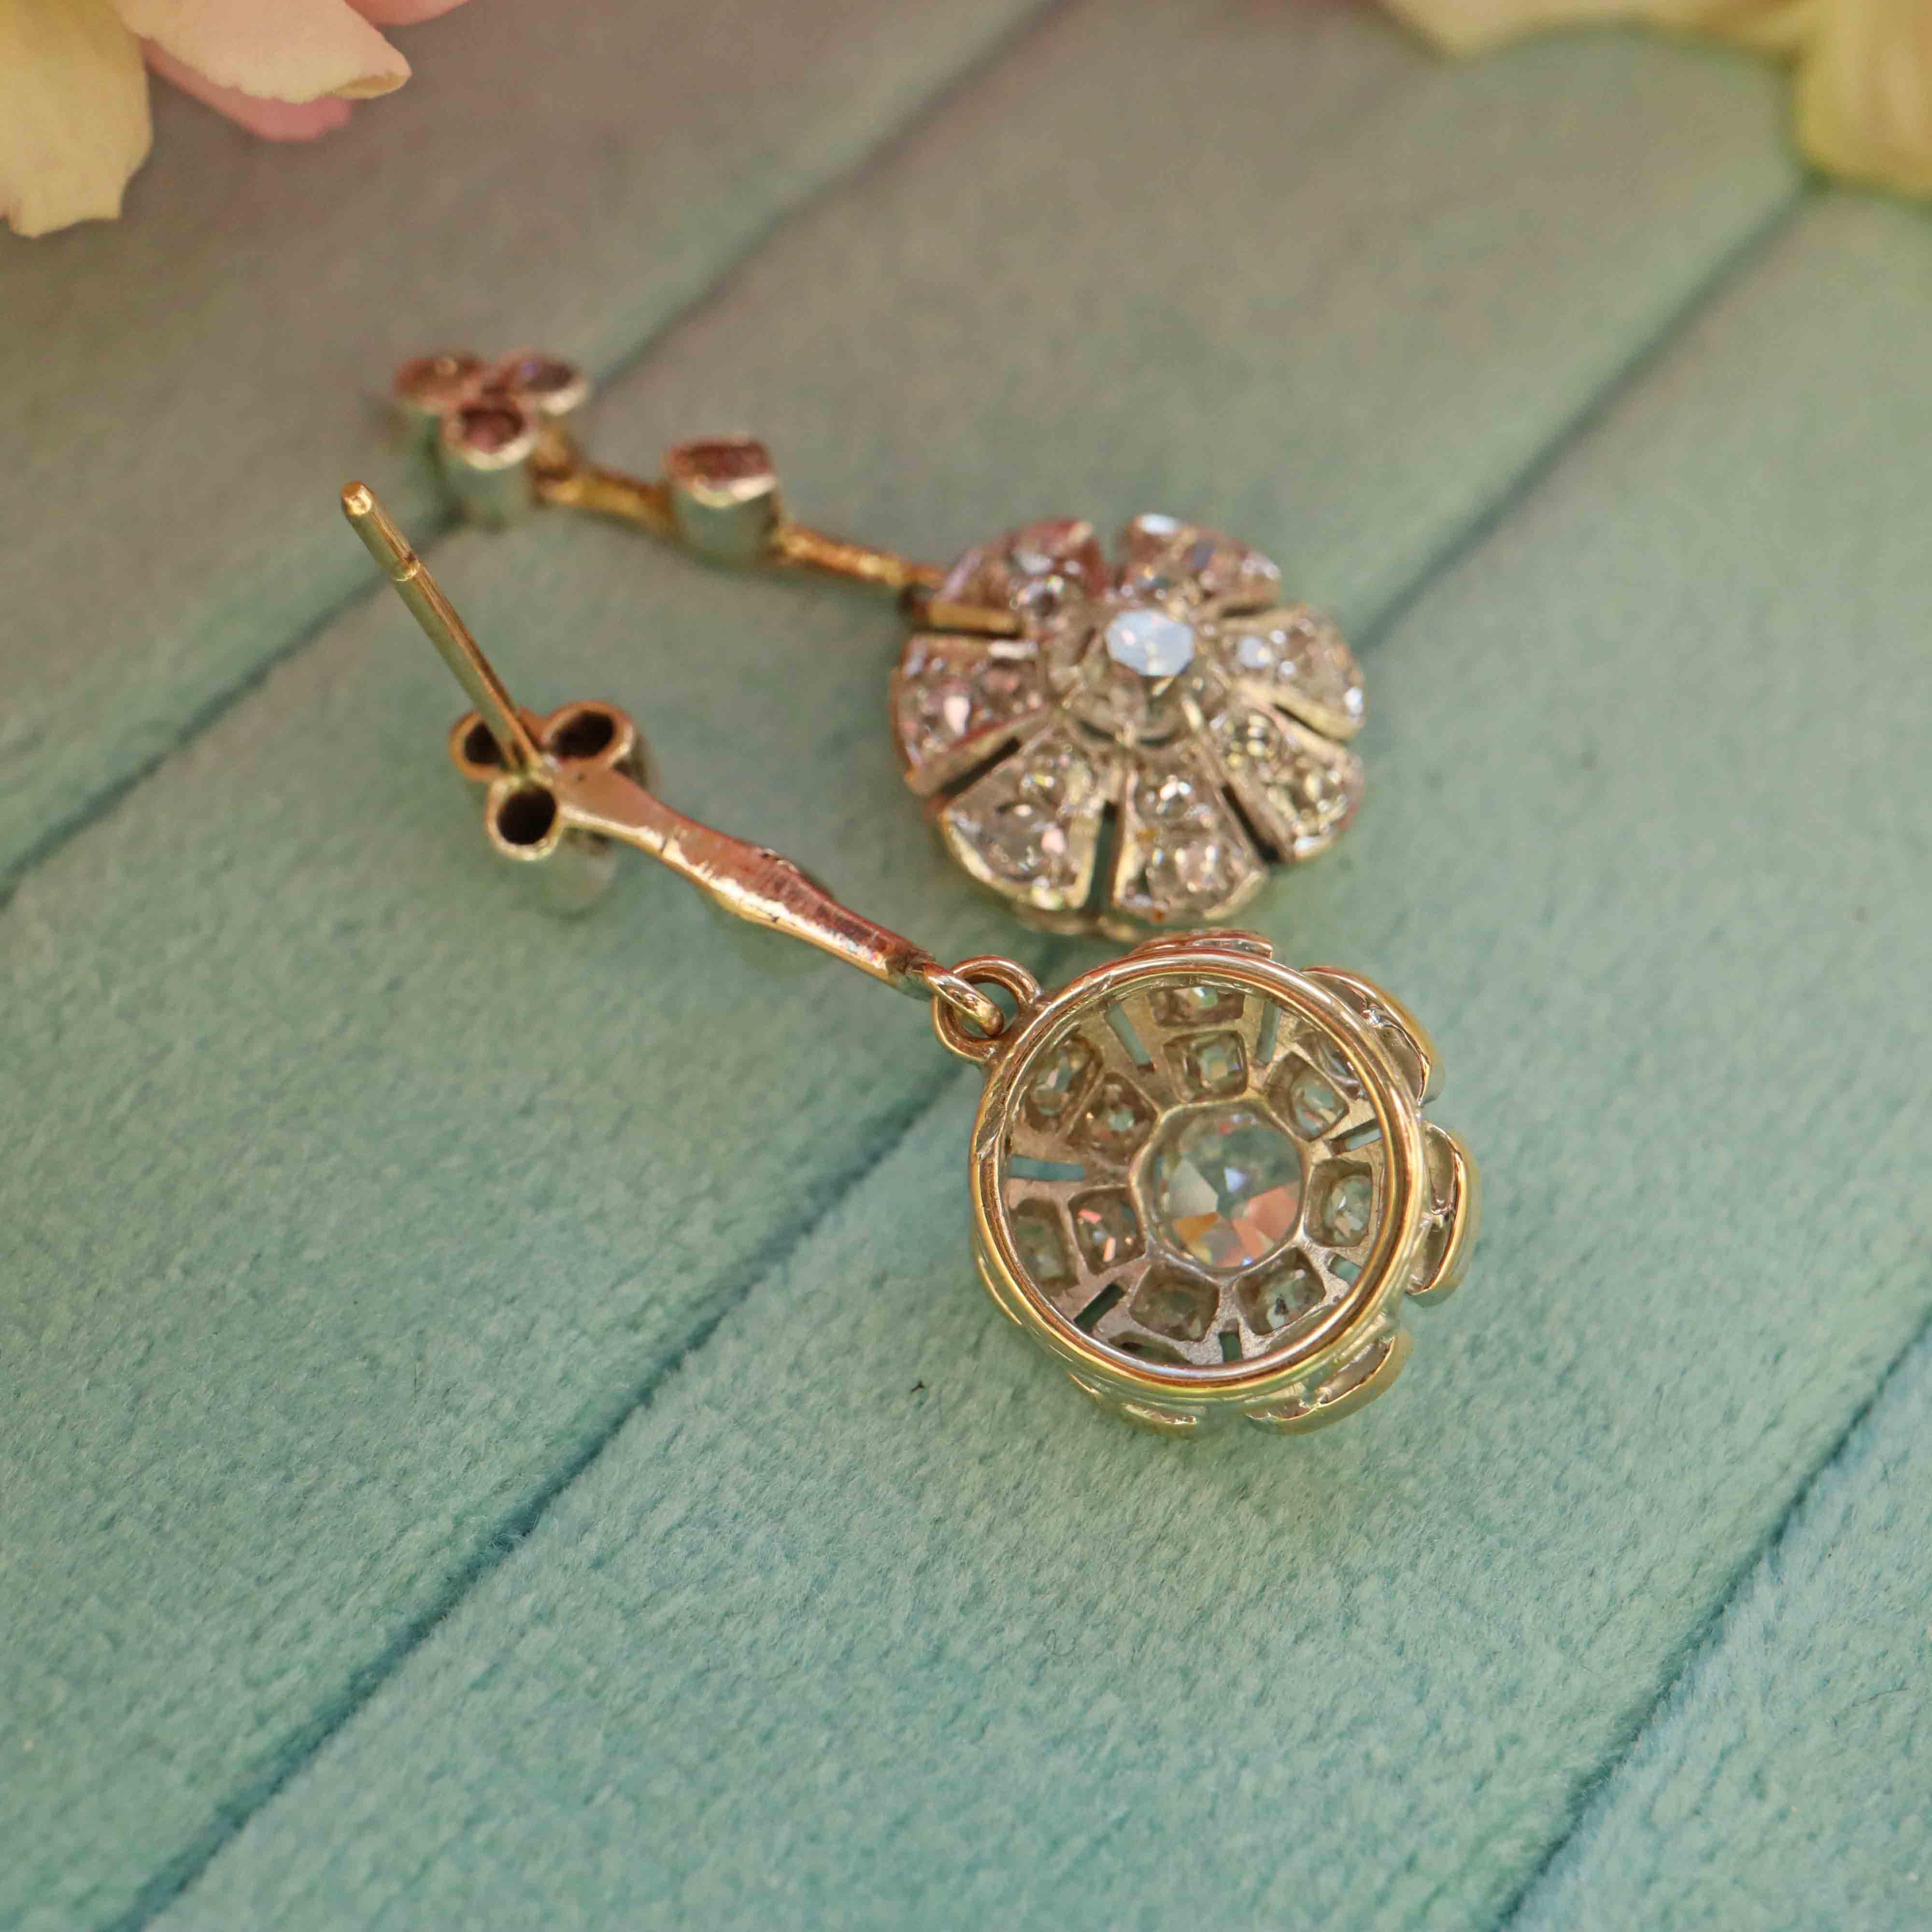 Ellibelle Jewellery Antique Edwardian Rose Cut Diamond Cluster Drop Earrings